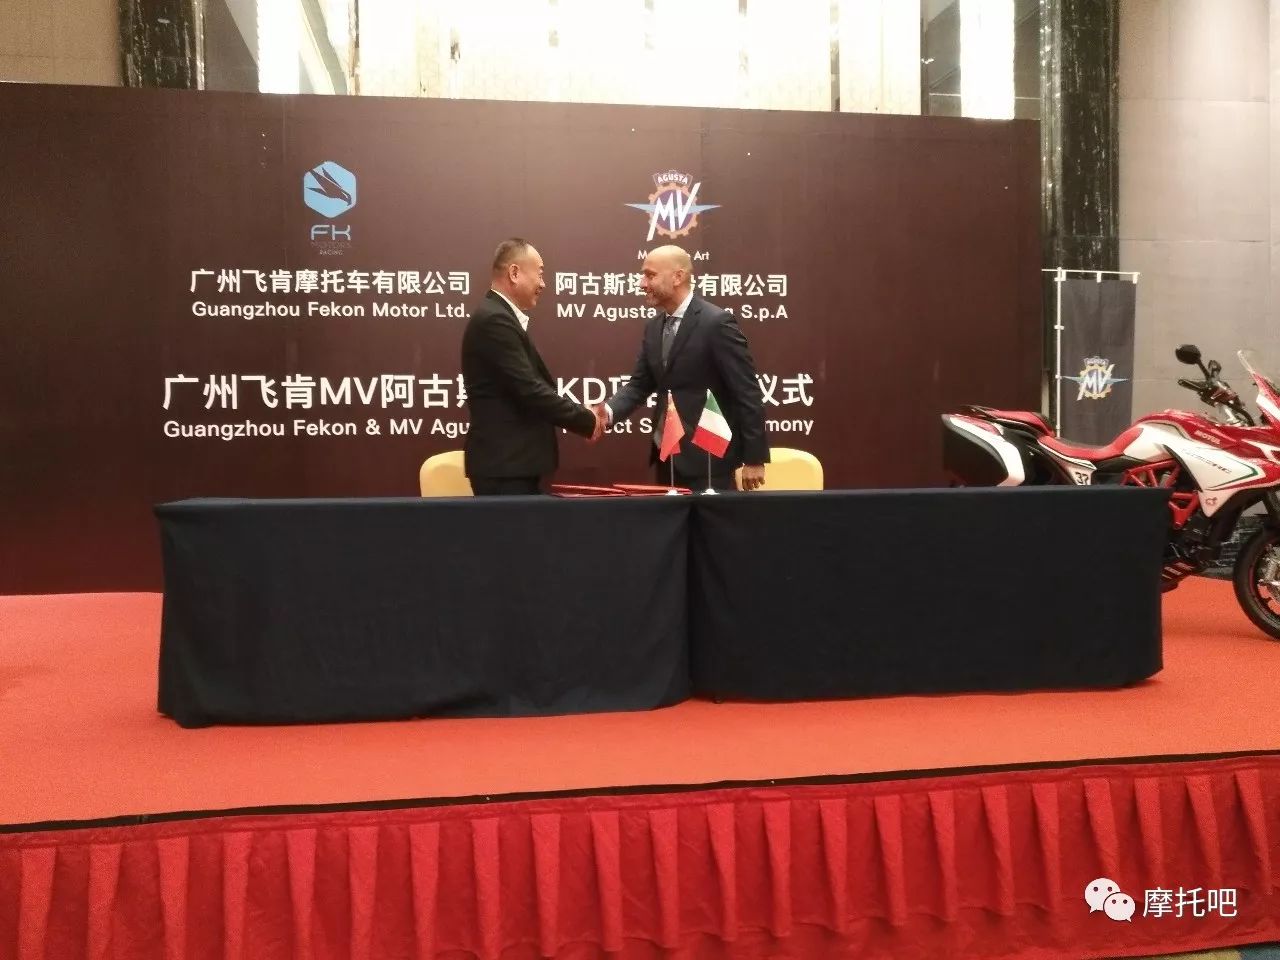                     刚刚，MV 阿古斯塔广州飞肯摩托签约了CKD散件进口组装项目！已确定有两款车型将投产